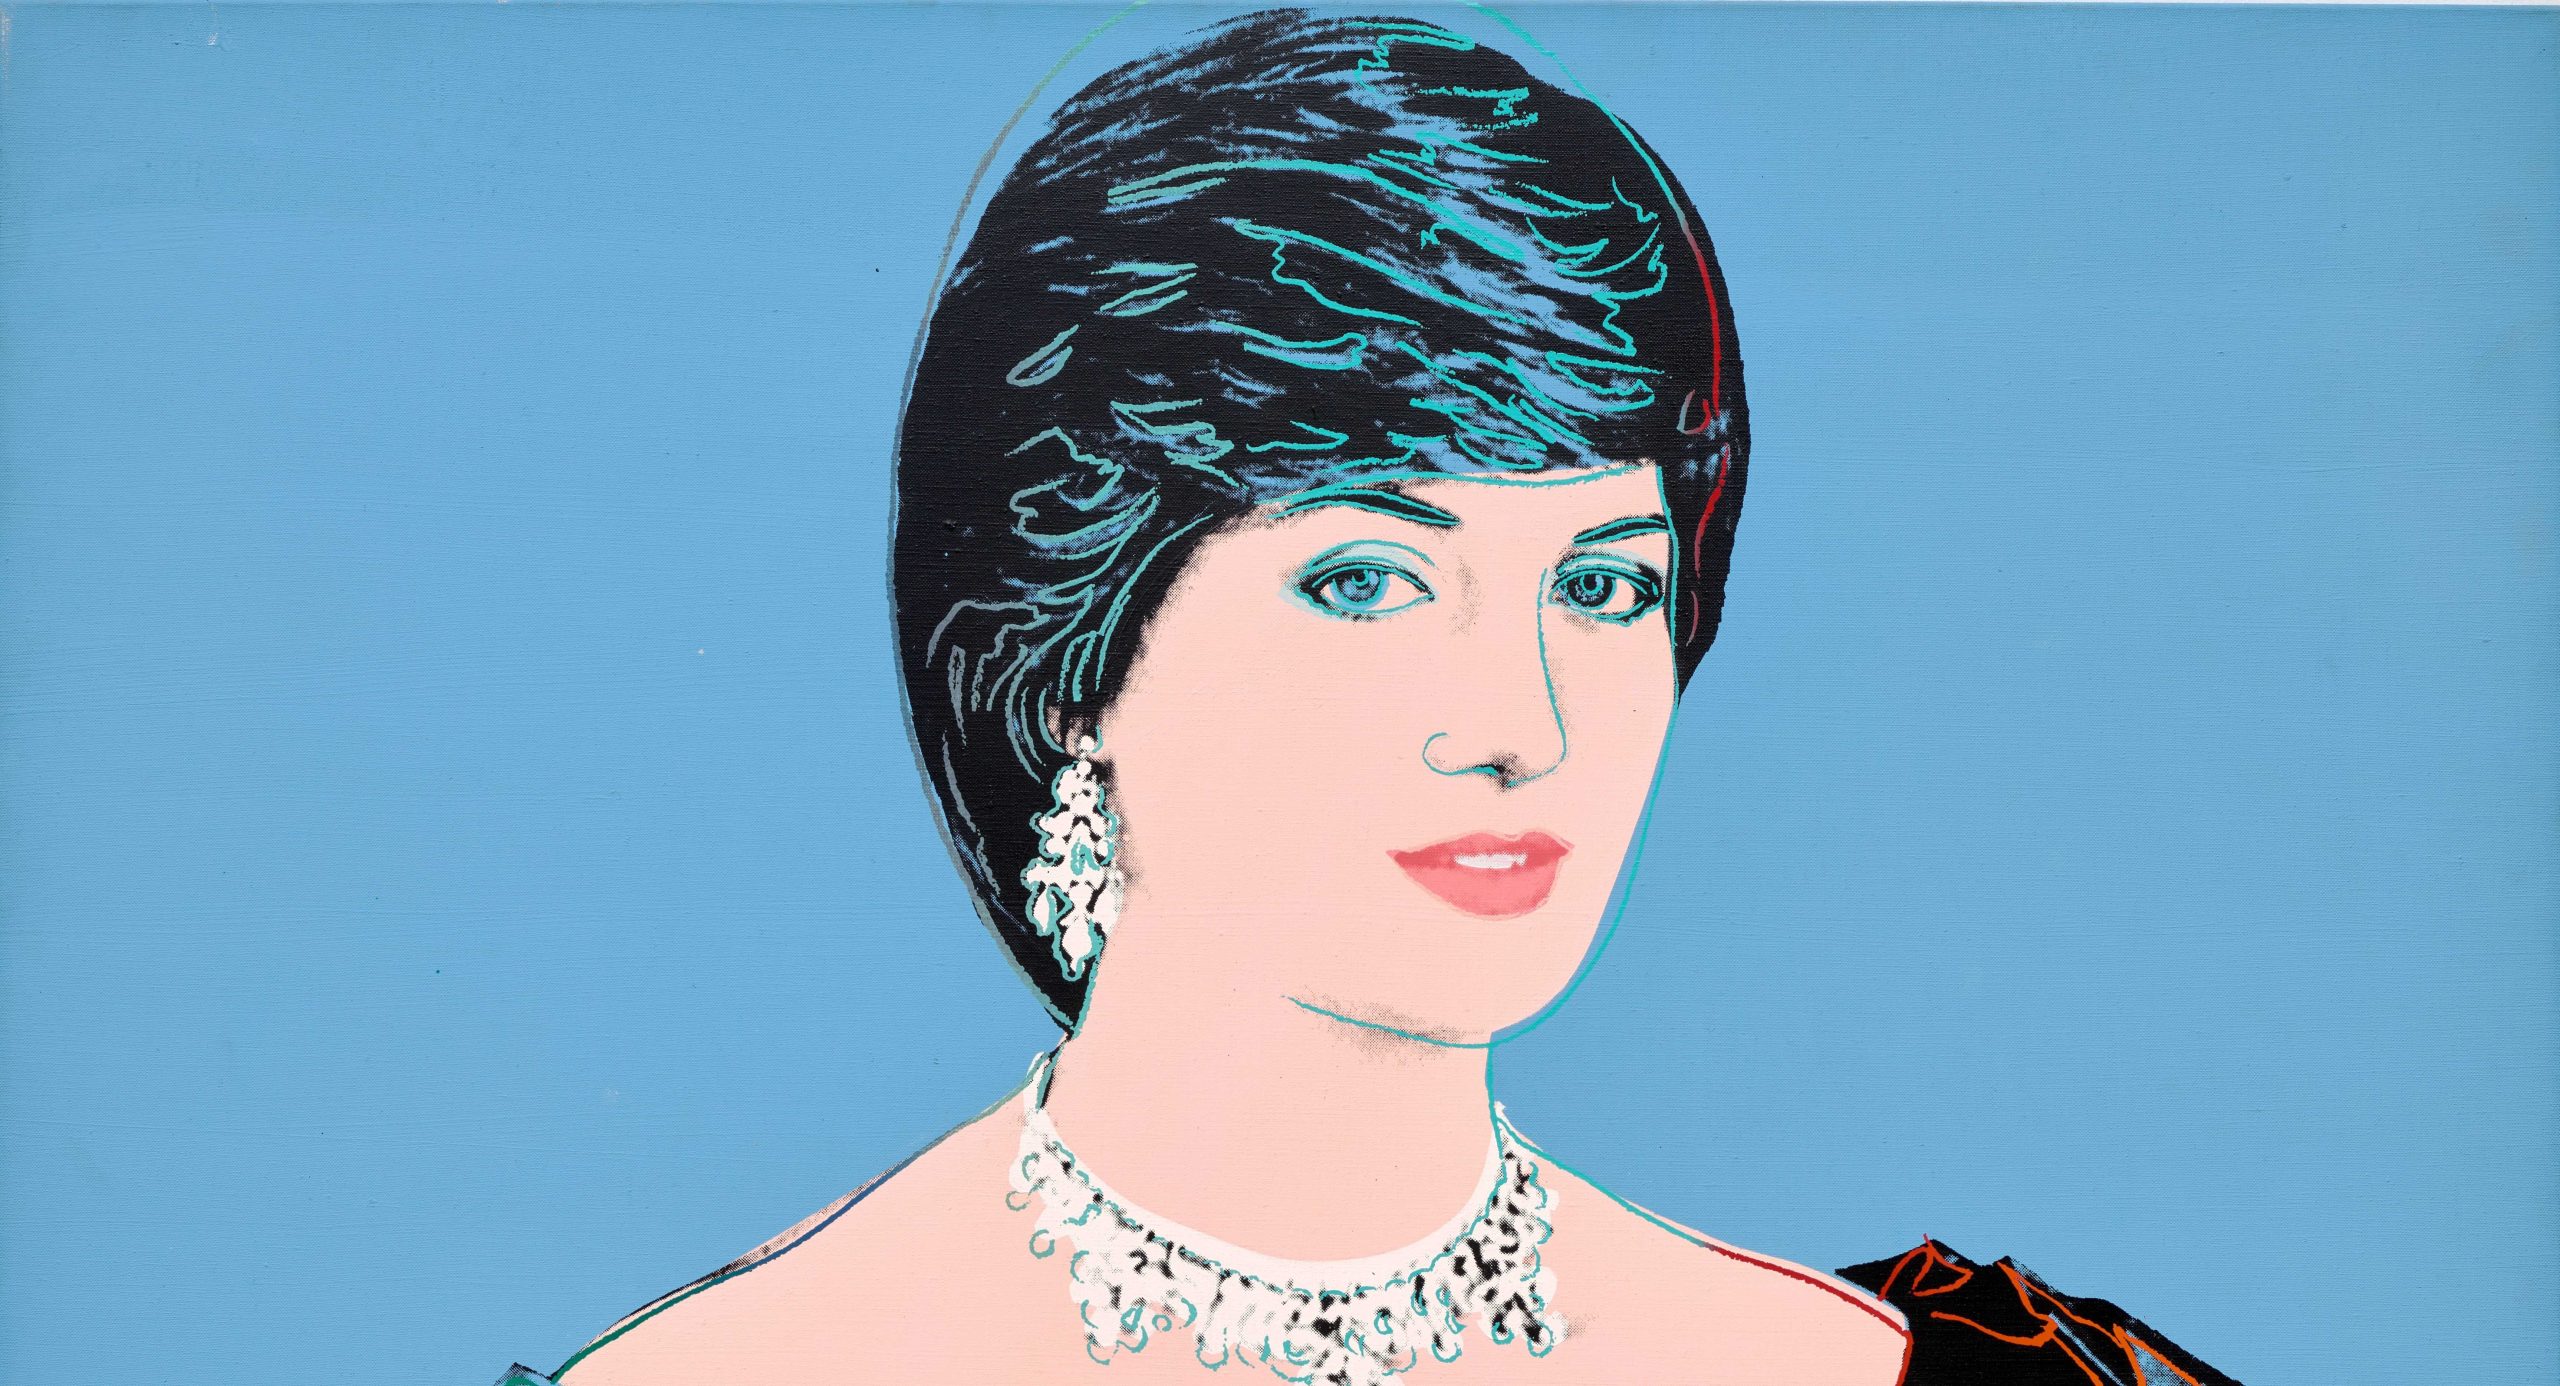 Evening Sale di Phillips: un iconico ritratto della Principessa Diana realizzato da Andy Warhol vale 1,8 milioni di sterline